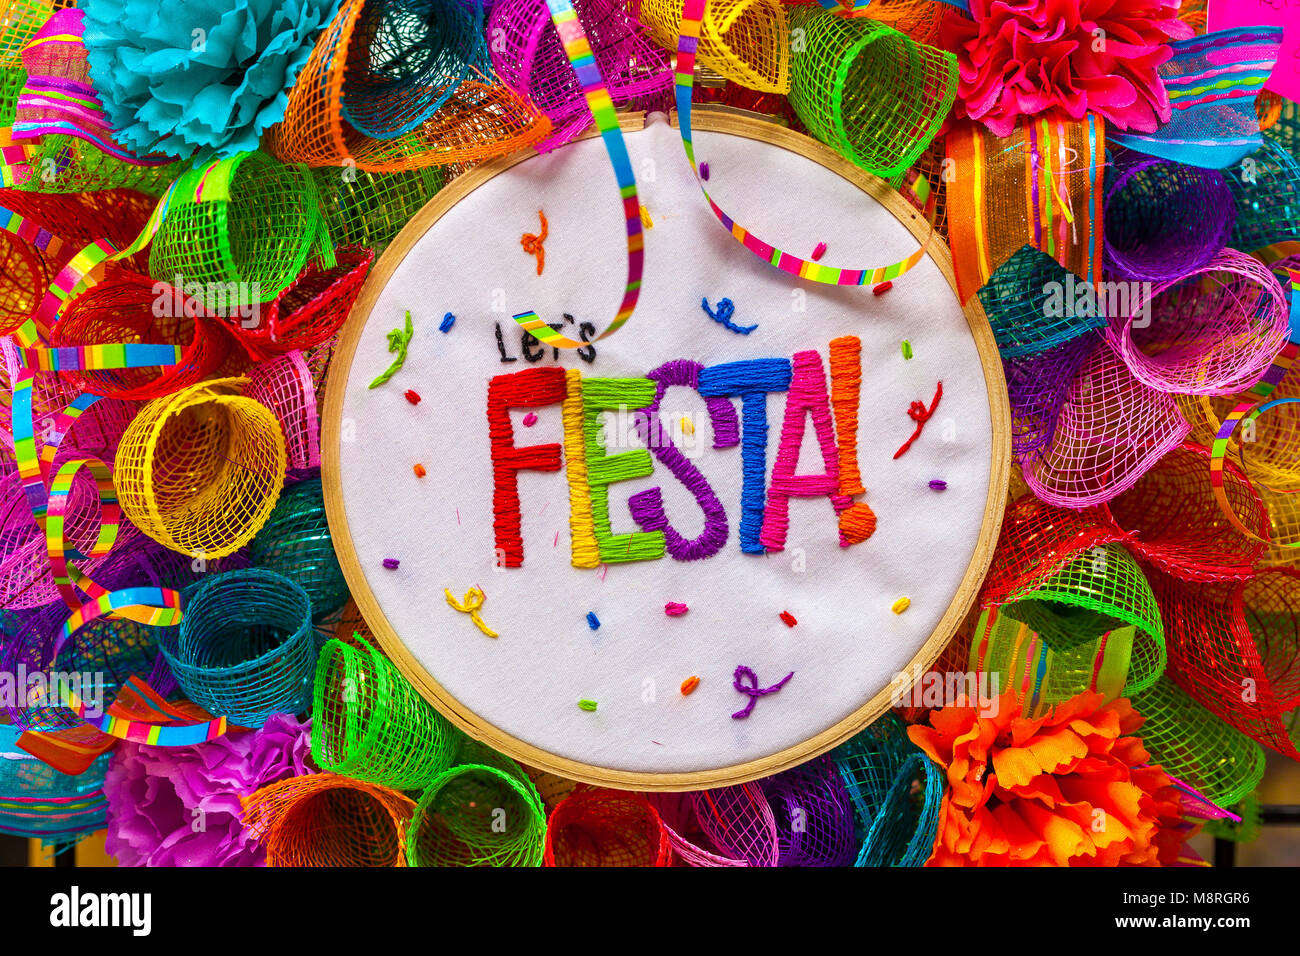 Das Wort 'Fiesta' in bunten Buchstaben auf bunten Brei mit Glitzer und Papier Blumen gestickt Stockfoto